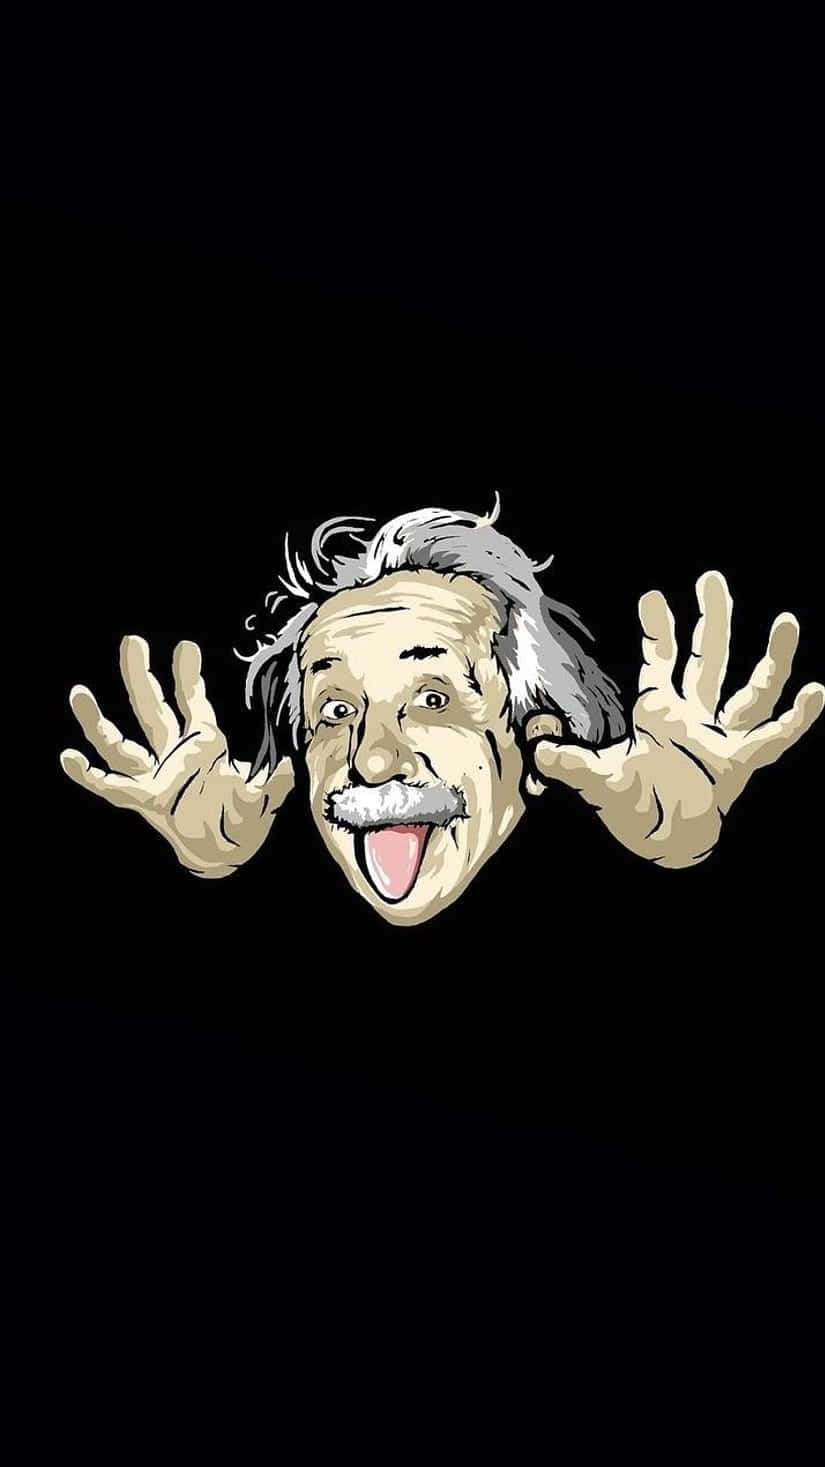 Einschwarzer Hintergrund Mit Einem Bild Von Albert Einstein. Wallpaper